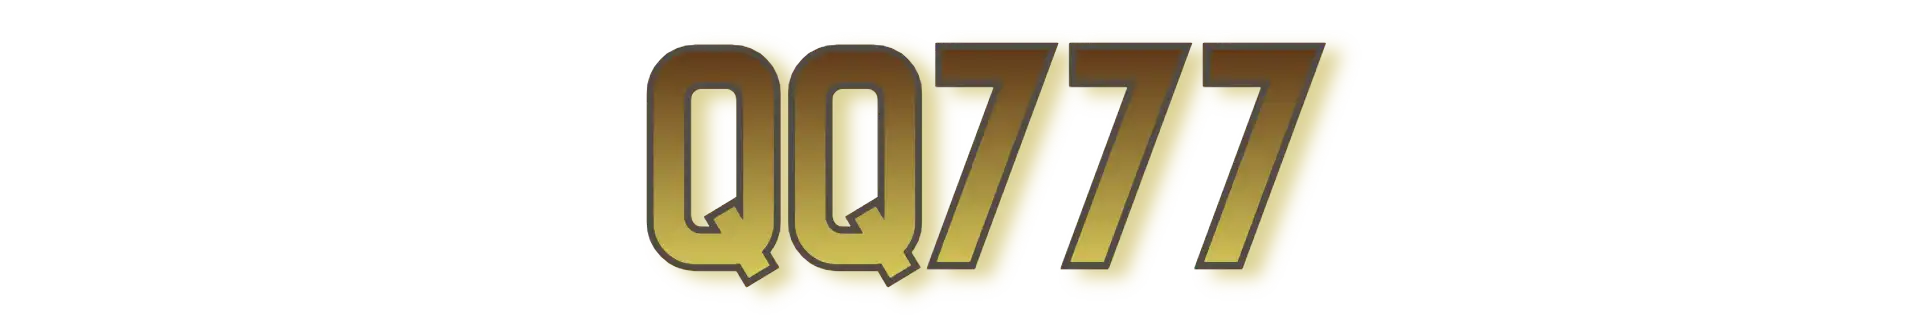 QQ777